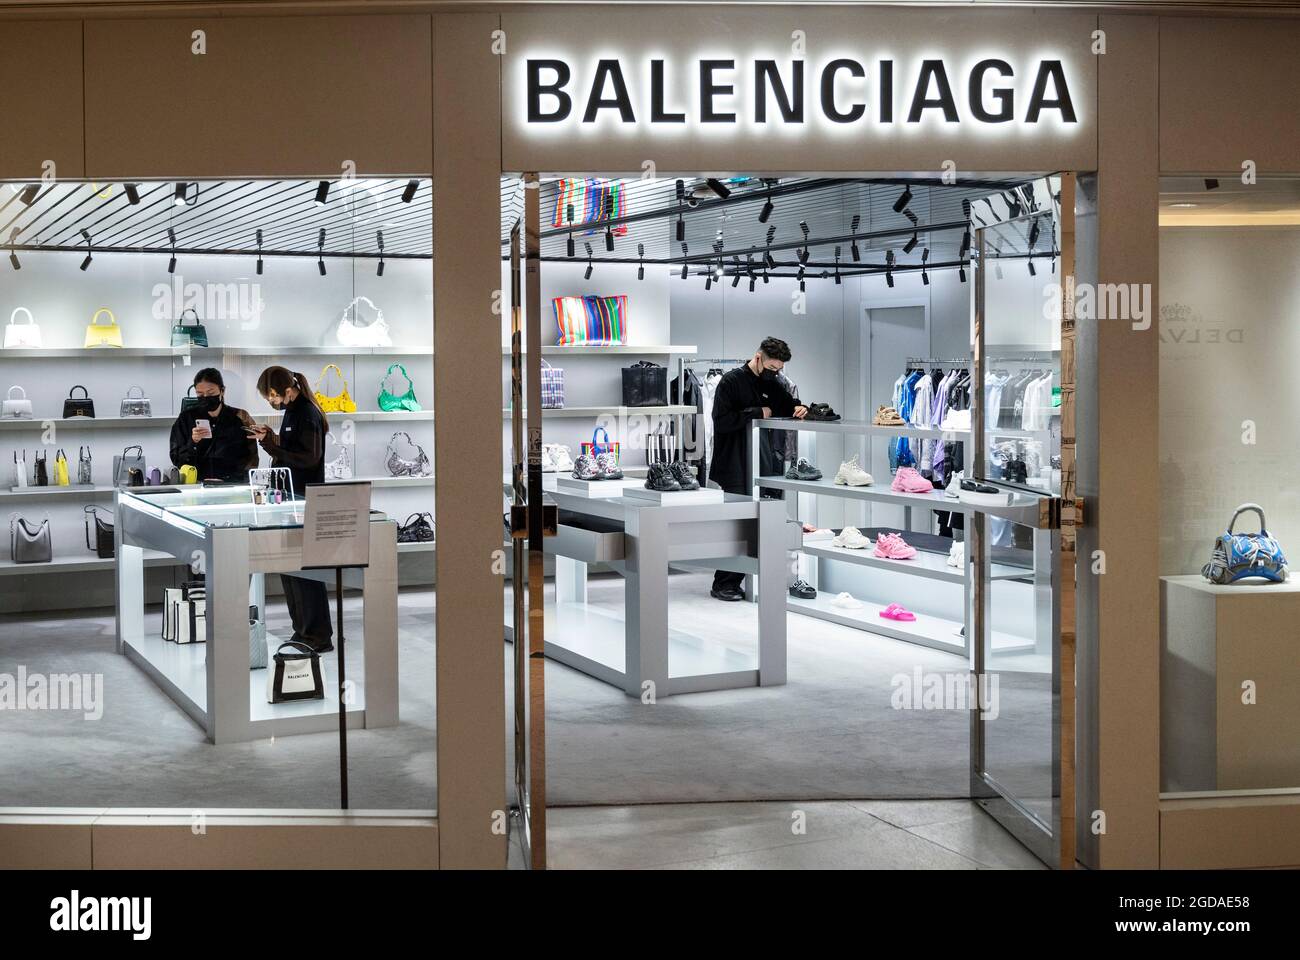 129 Balenciaga Shop Stock Photos - Free & Royalty-Free Stock